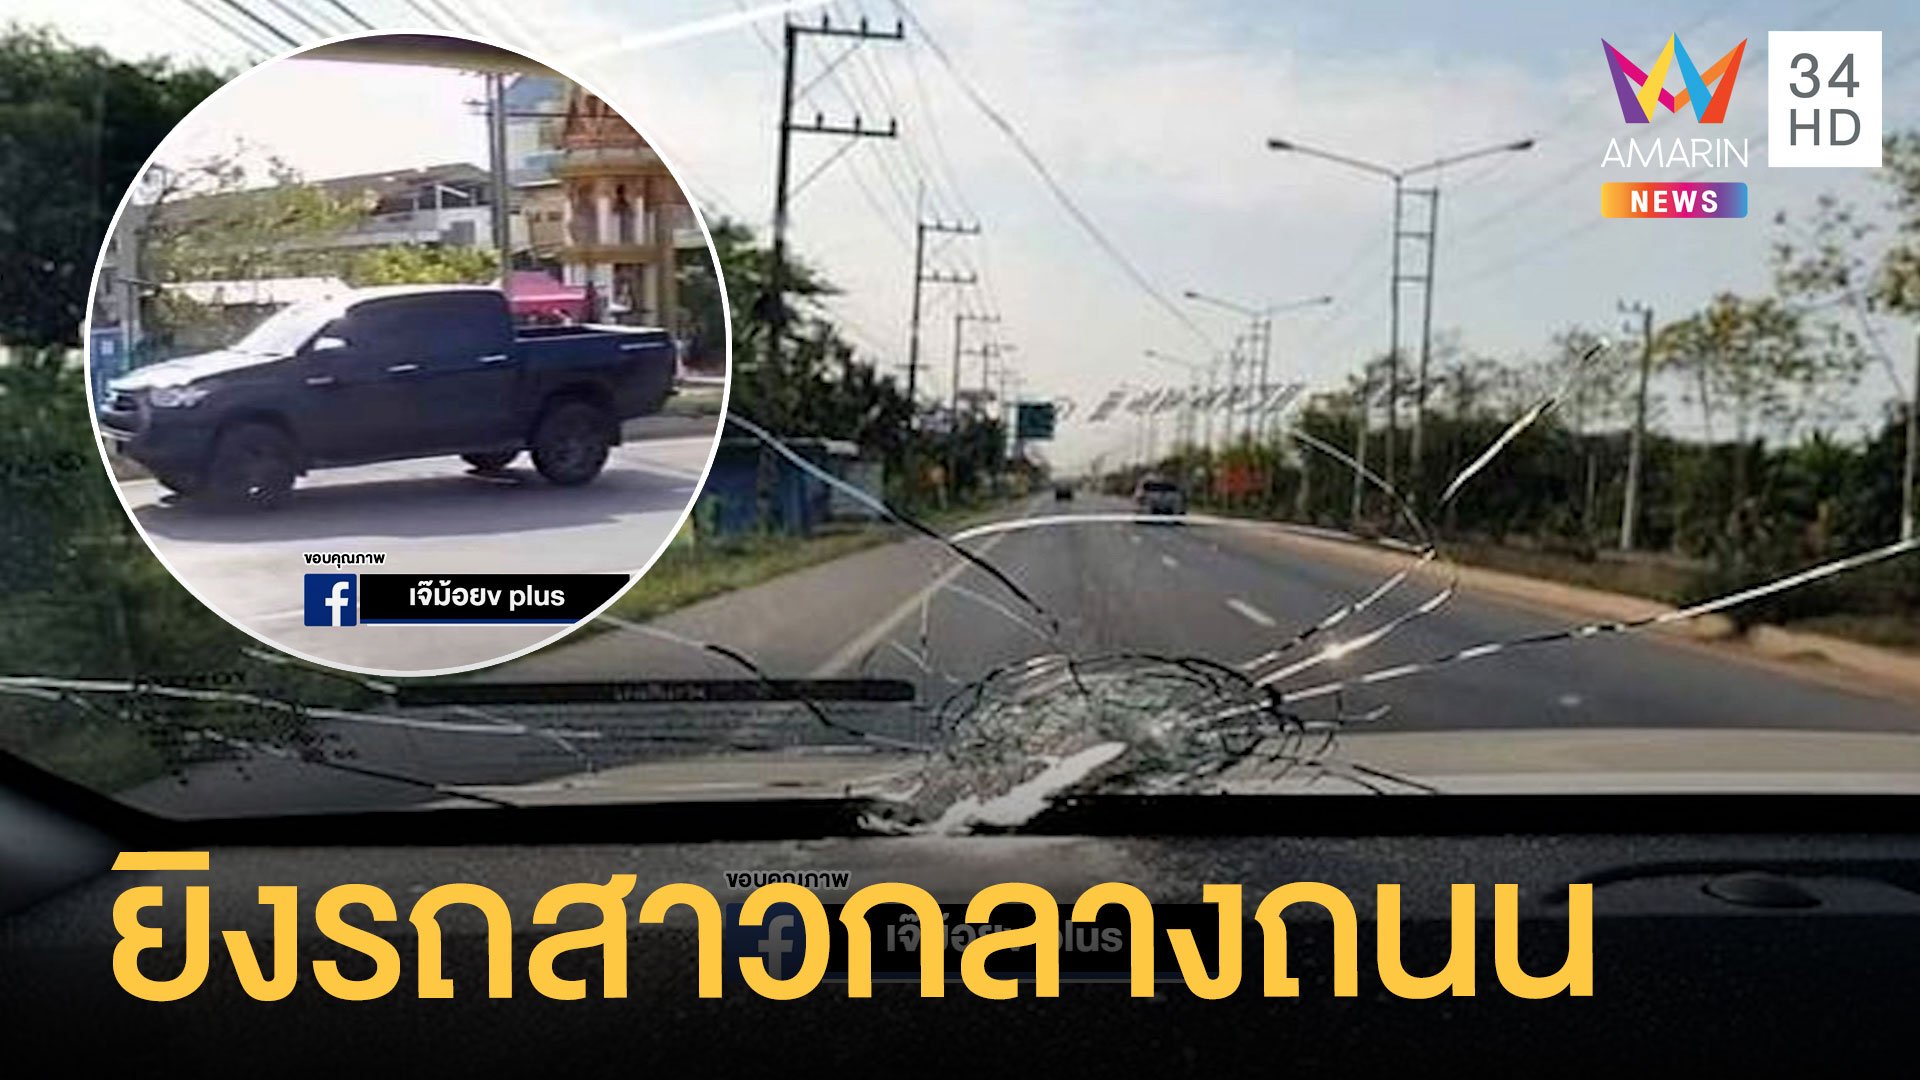 สาวผวา! ถูกกระบะดำยิงกลางถนนหวิดดับ | ข่าวเที่ยงอมรินทร์ | 10 เม.ย. 64 | AMARIN TVHD34